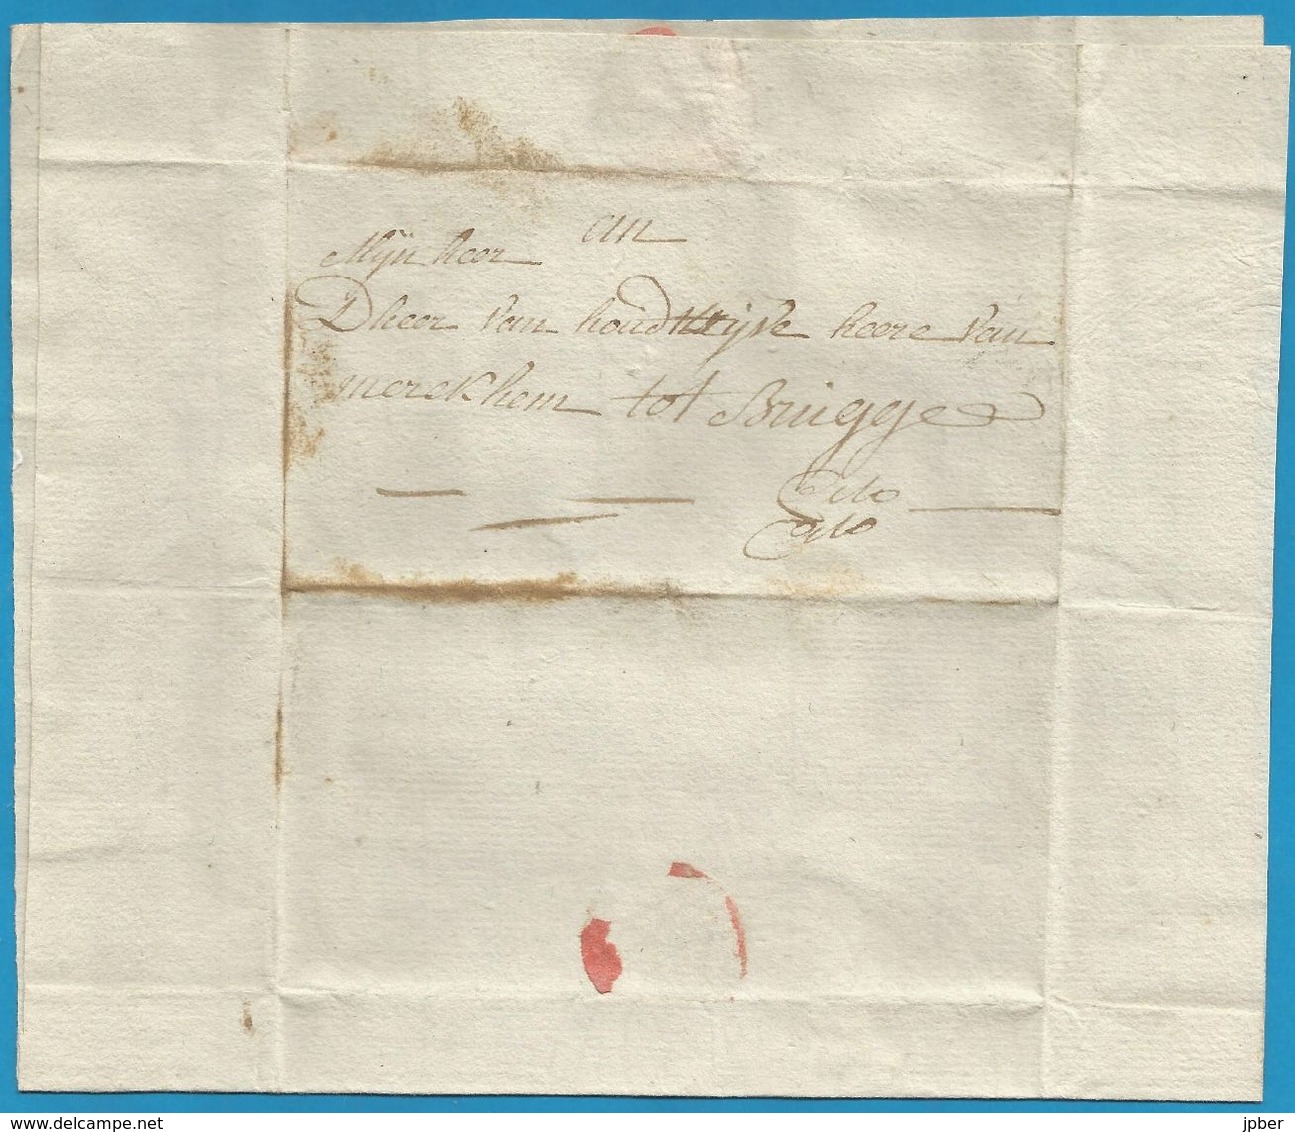 (T-001) Belgique - Précurseur - LAC Du 22/12/1802 De NieuwenDamme à Brugge - Contenu "...de Heer Beghin ... Dixmuide..." - 1794-1814 (Période Française)